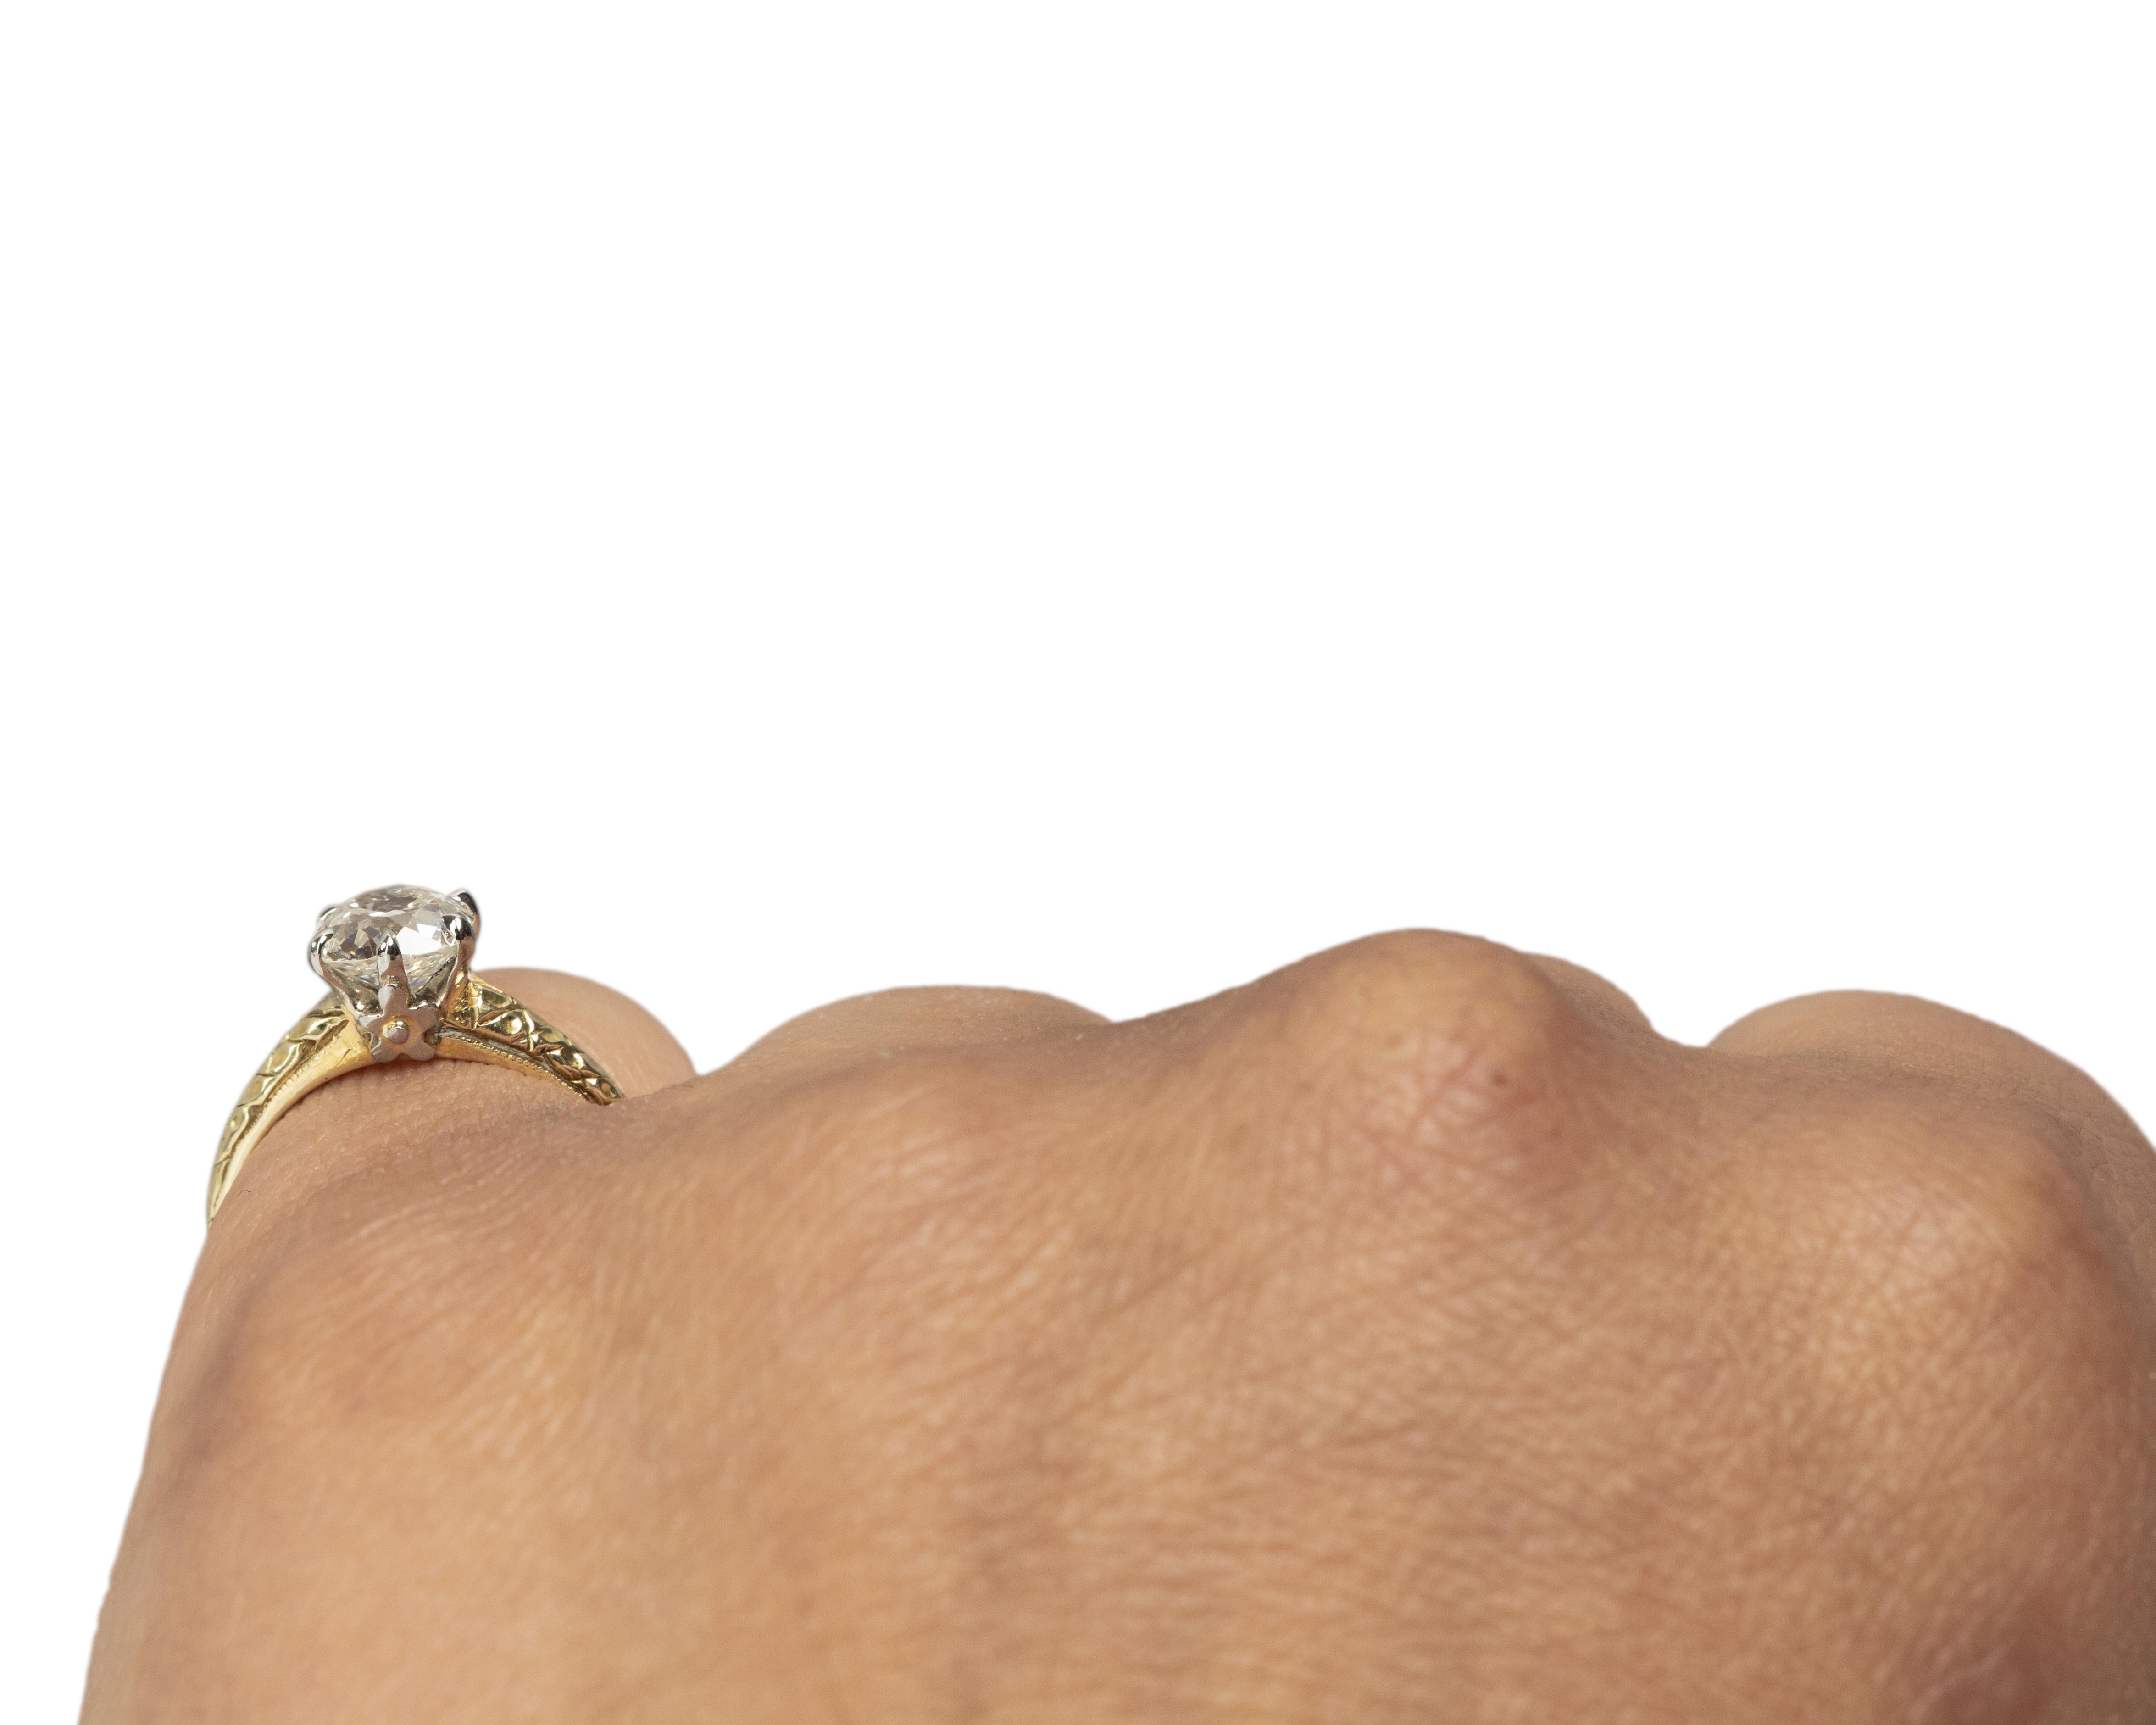 GIA Certified 1.00 Carat Edwardian Diamond 14 Karat Yellow Gold Engagement Ring For Sale 1